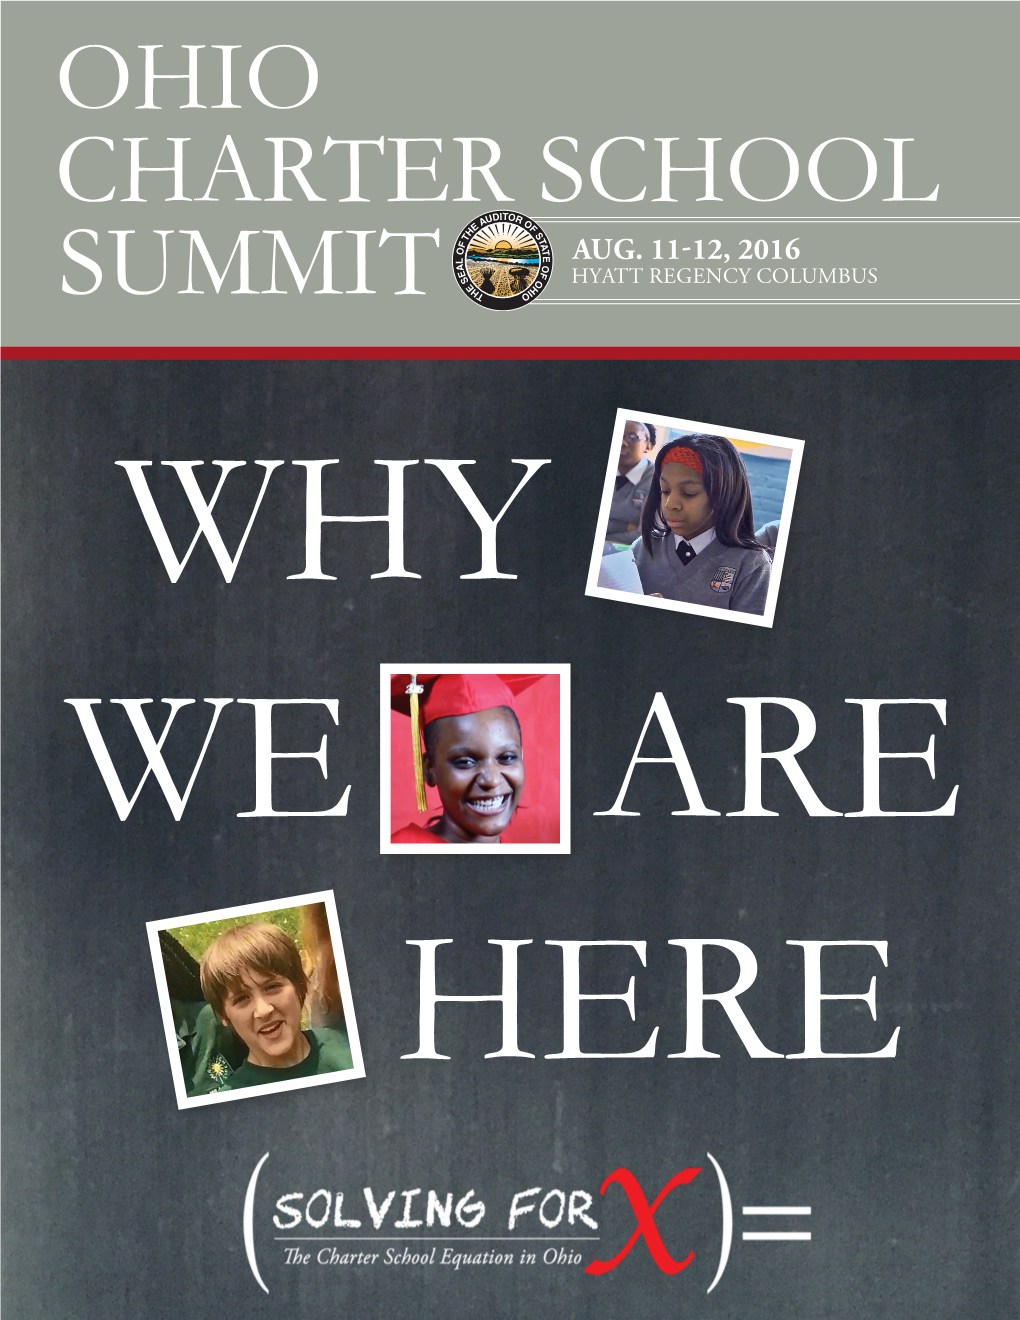 Charter School Ohio